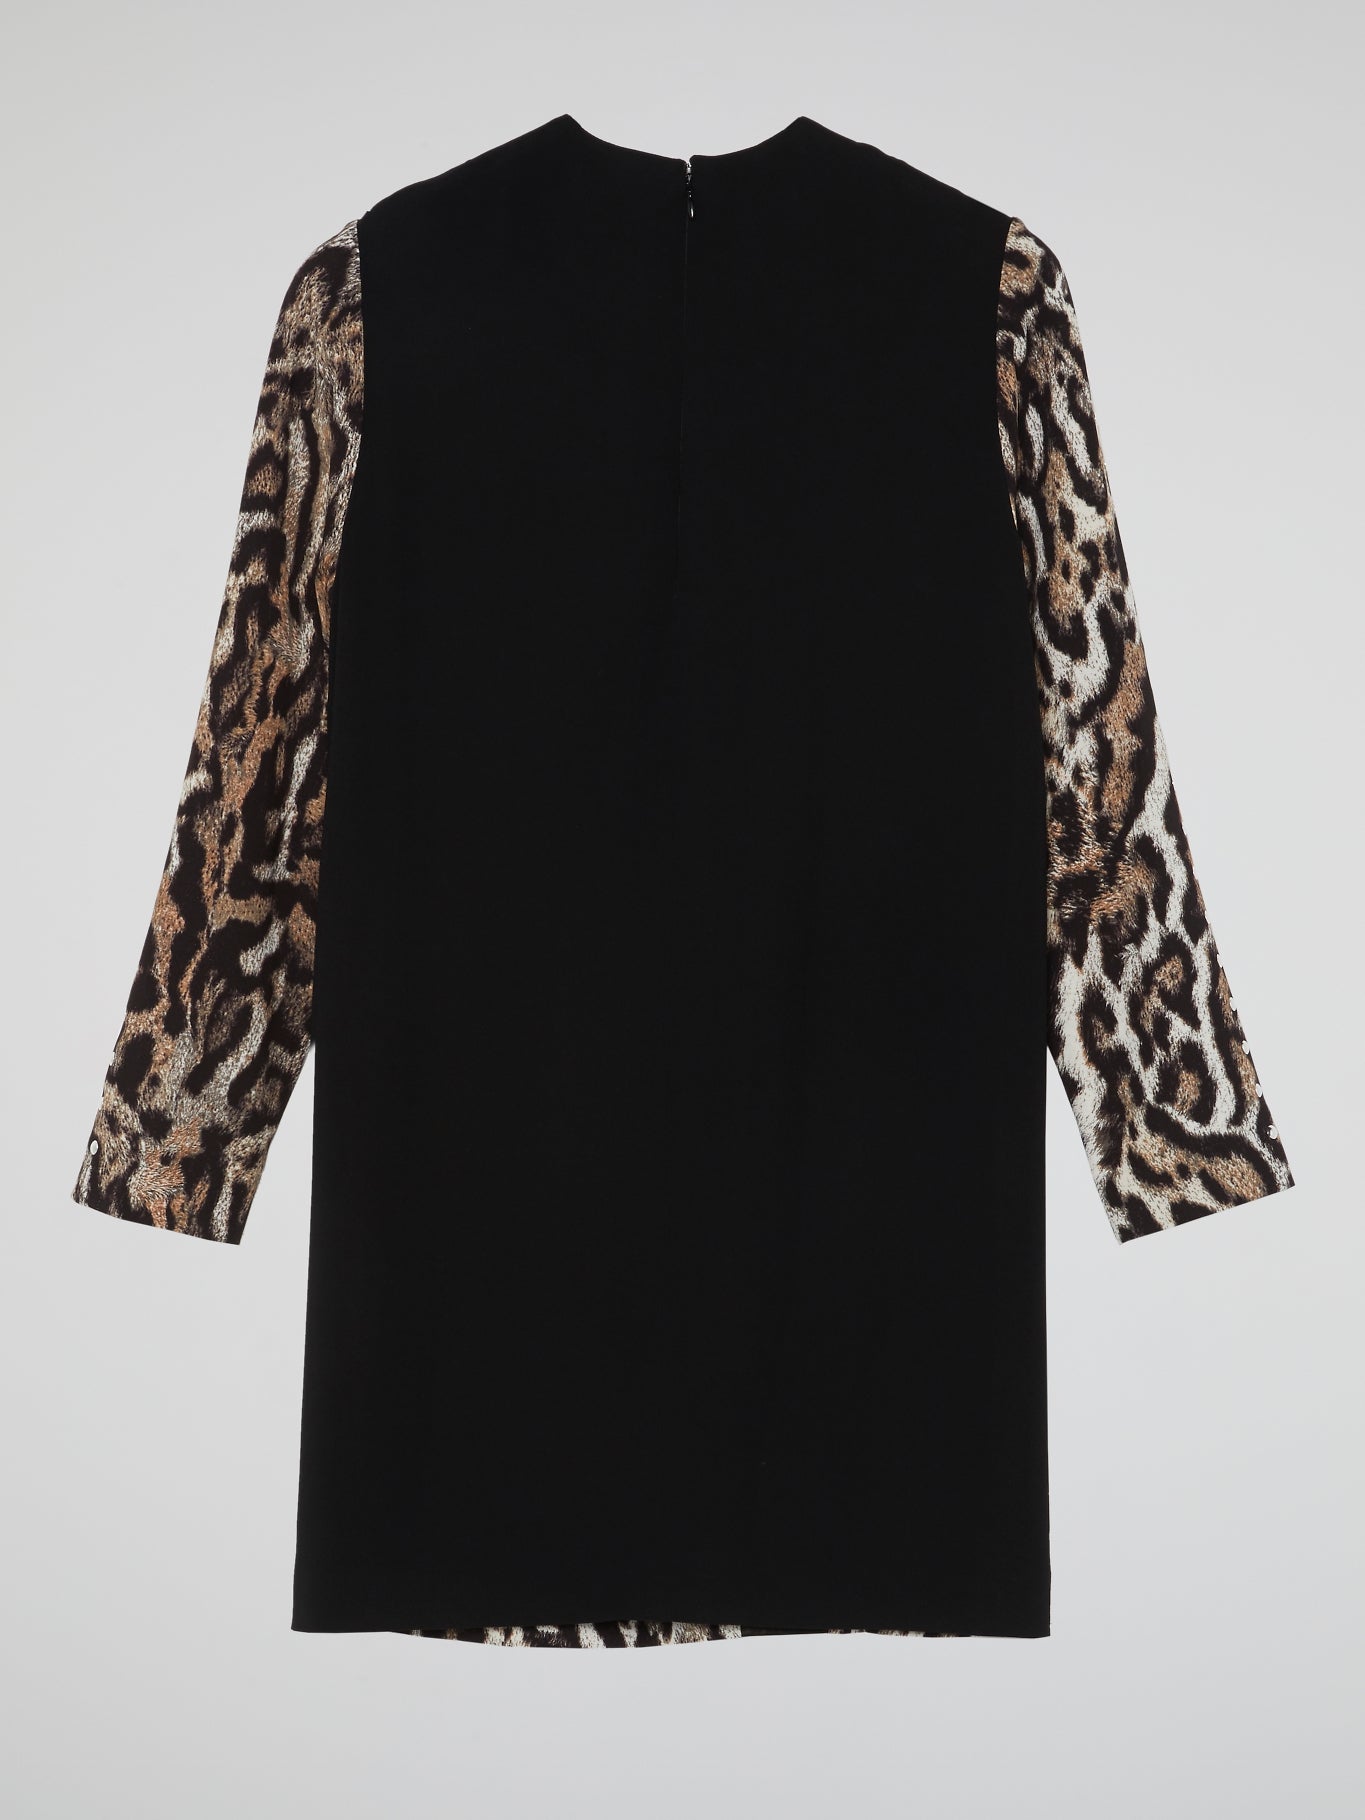 Leopard Print Shift Dress